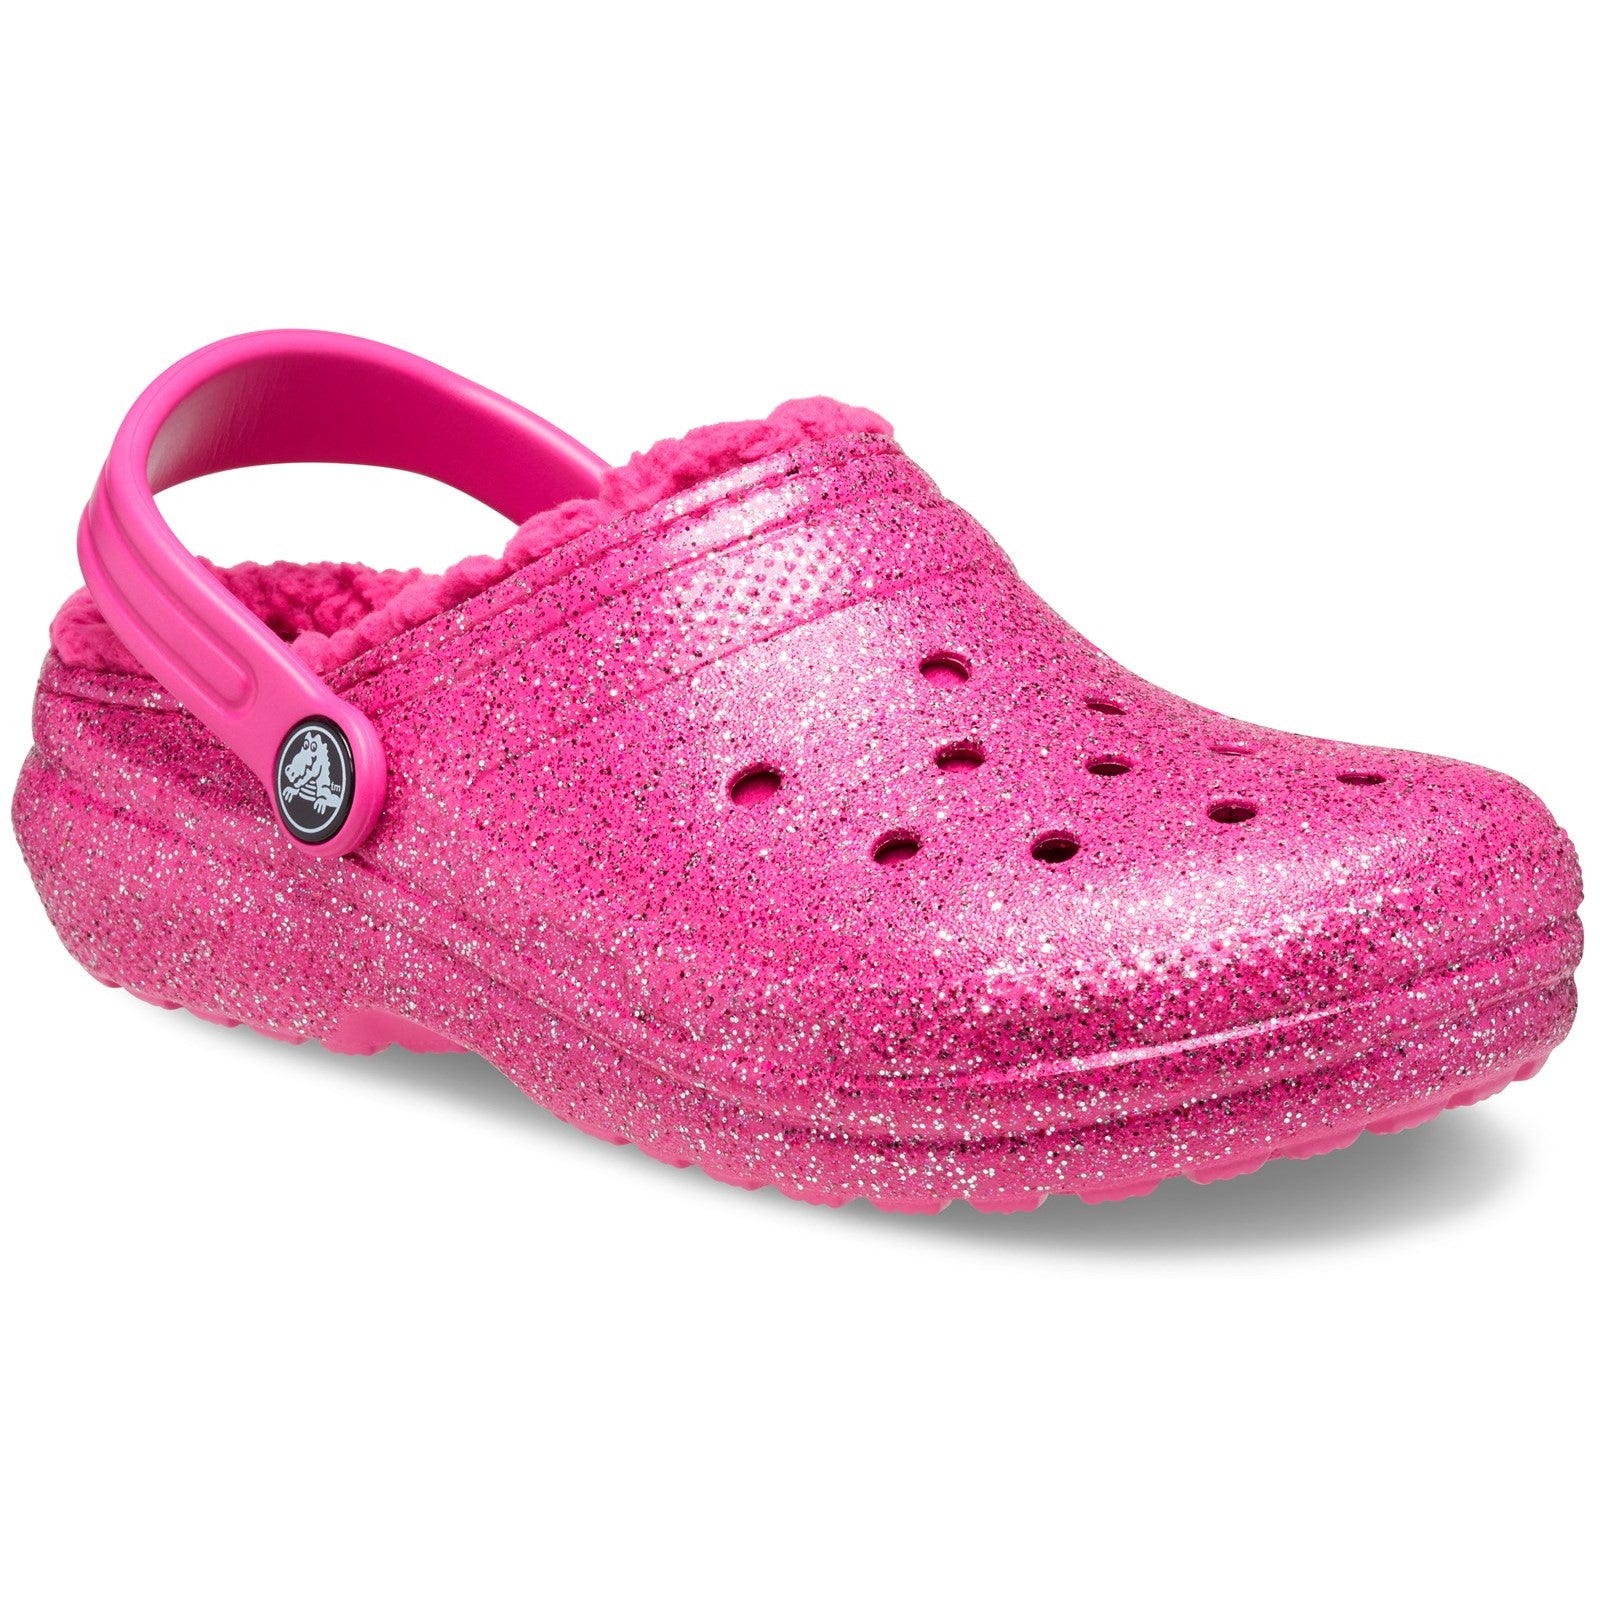 Crocs Kids' Classic Glitter Lined Clog Sandals